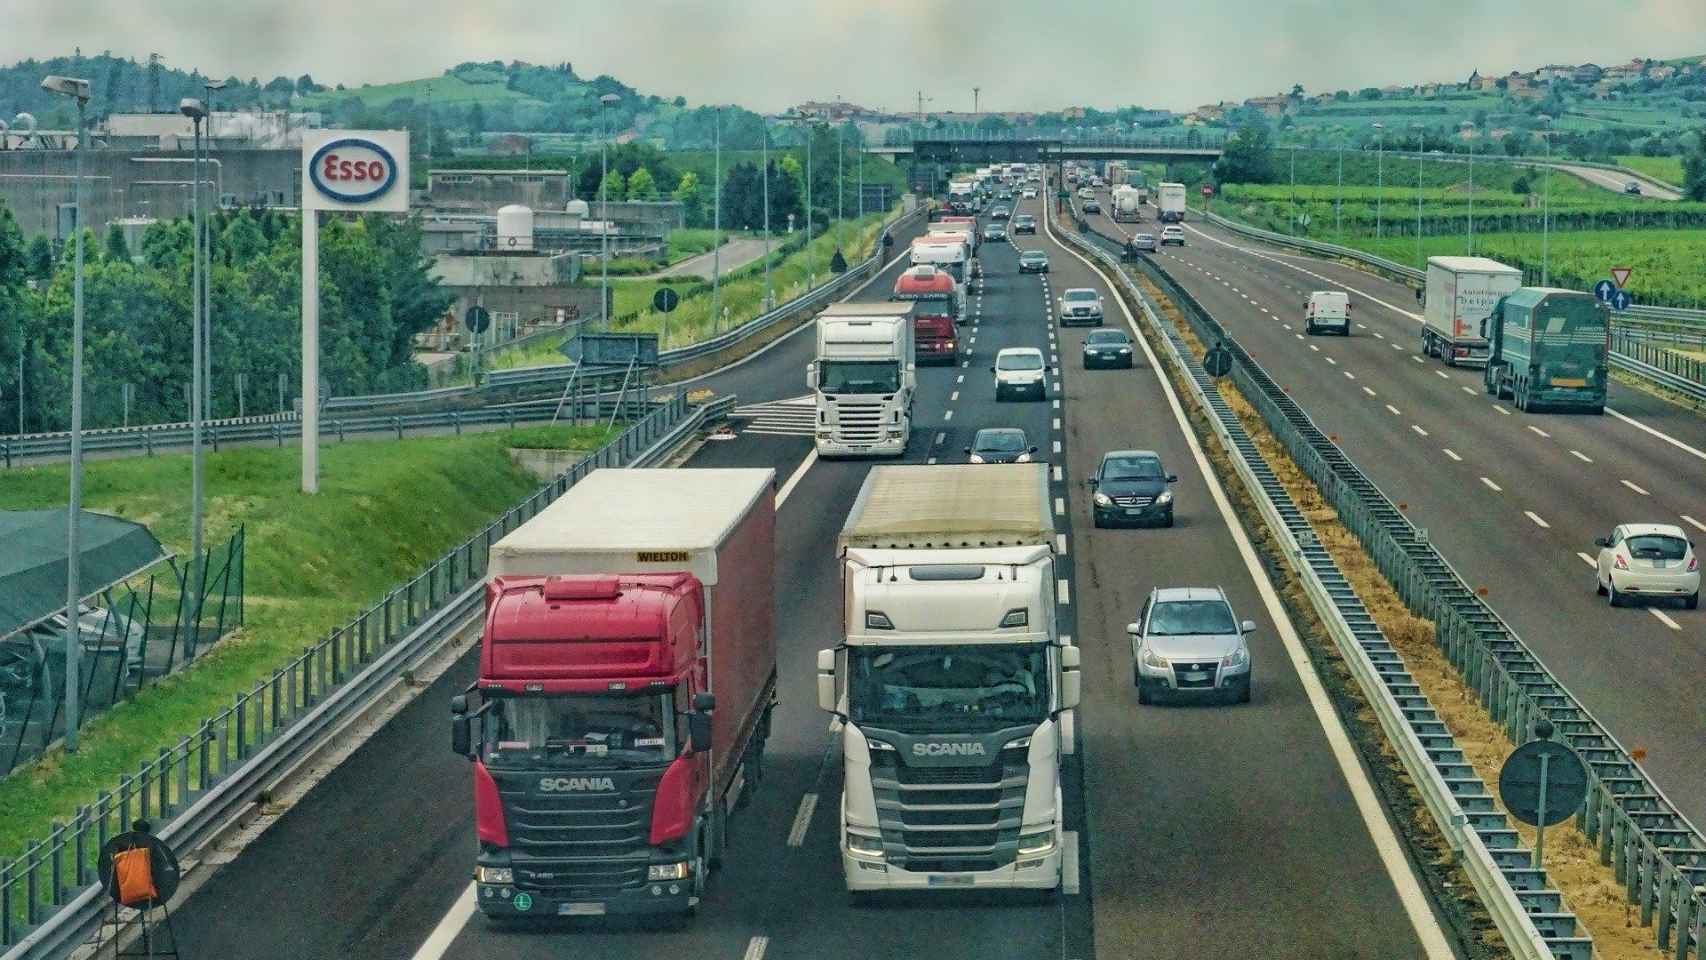 Varios camioneros conducen por una autopista / CG